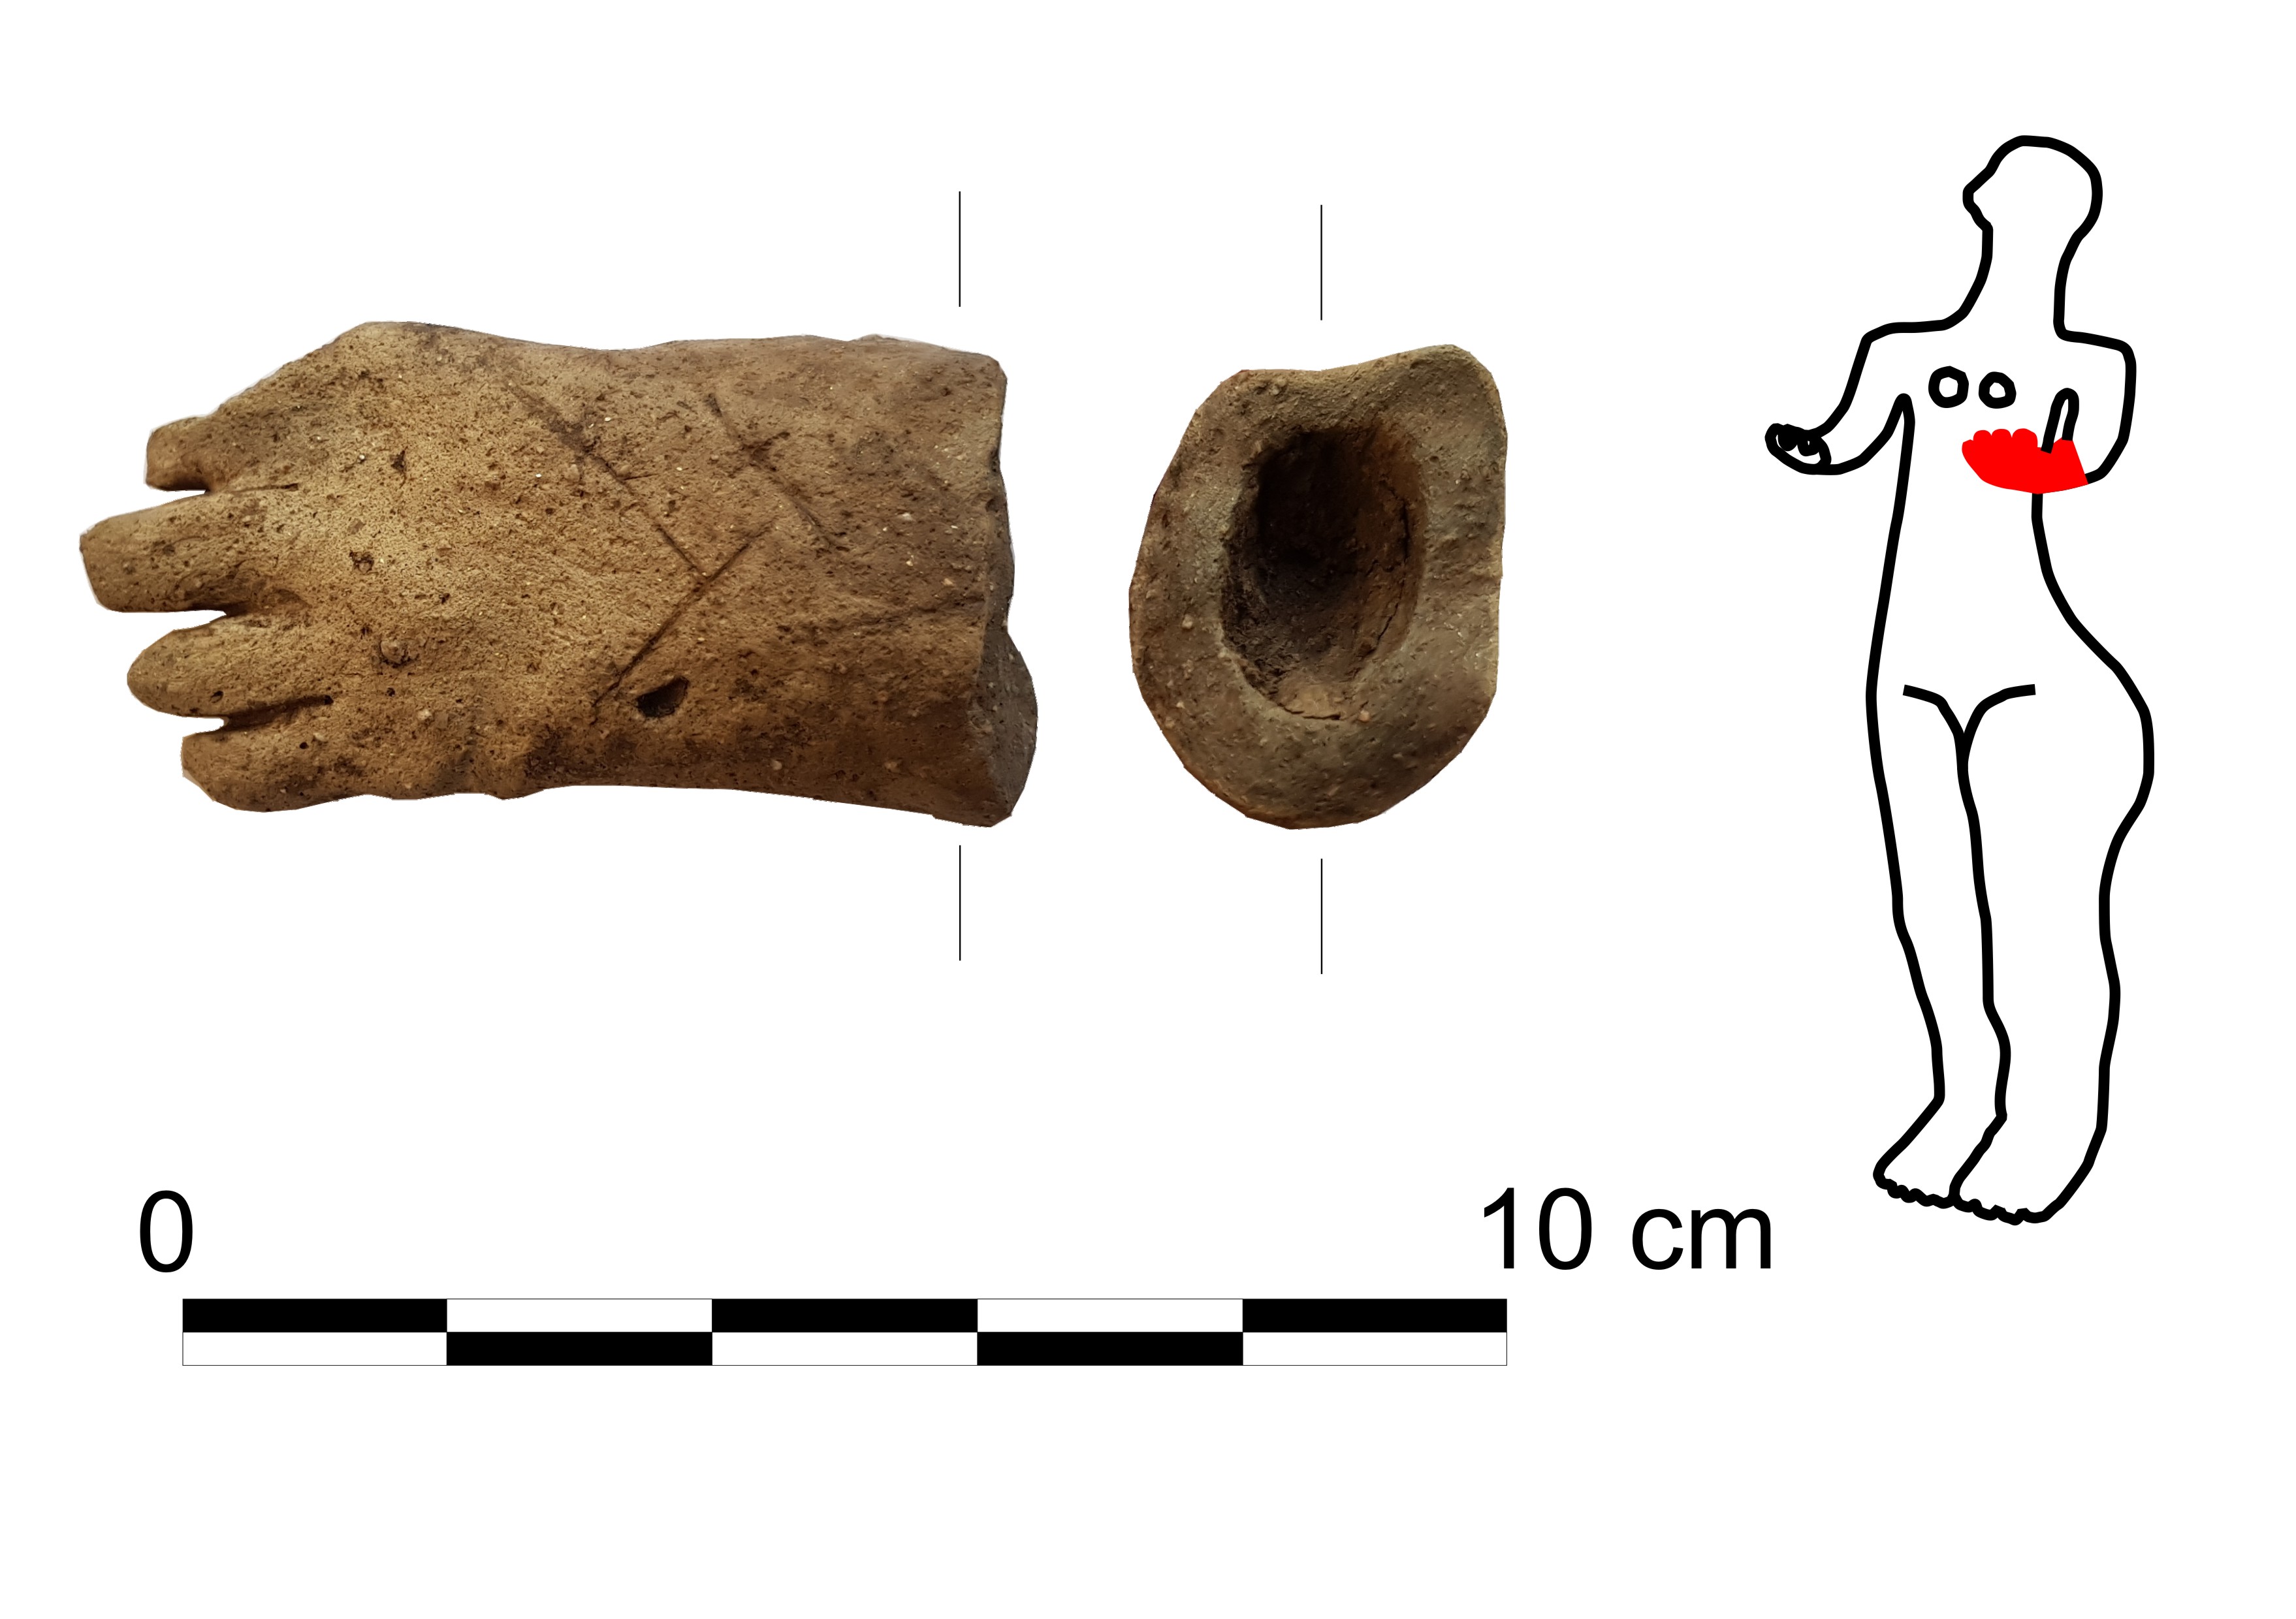 Archeologové pod budoucím pavilonem jičínské nemocnice našli vzácný kus sošky z doby kamenné 